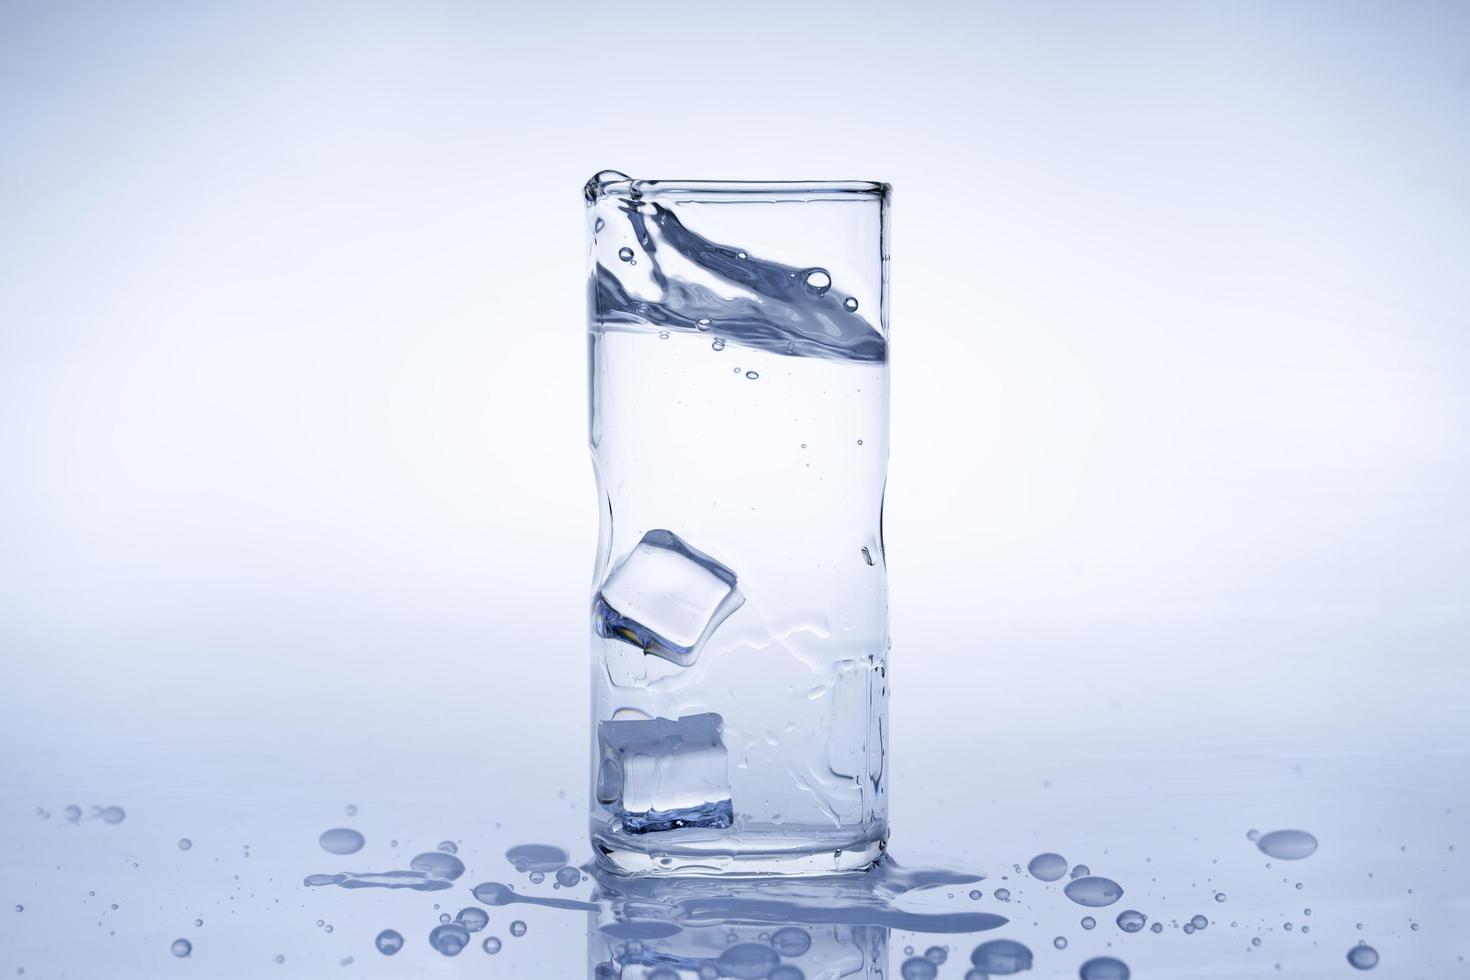 ijsblokje viel in het glas water.water spatte uit het heldere glas.vers concept foto